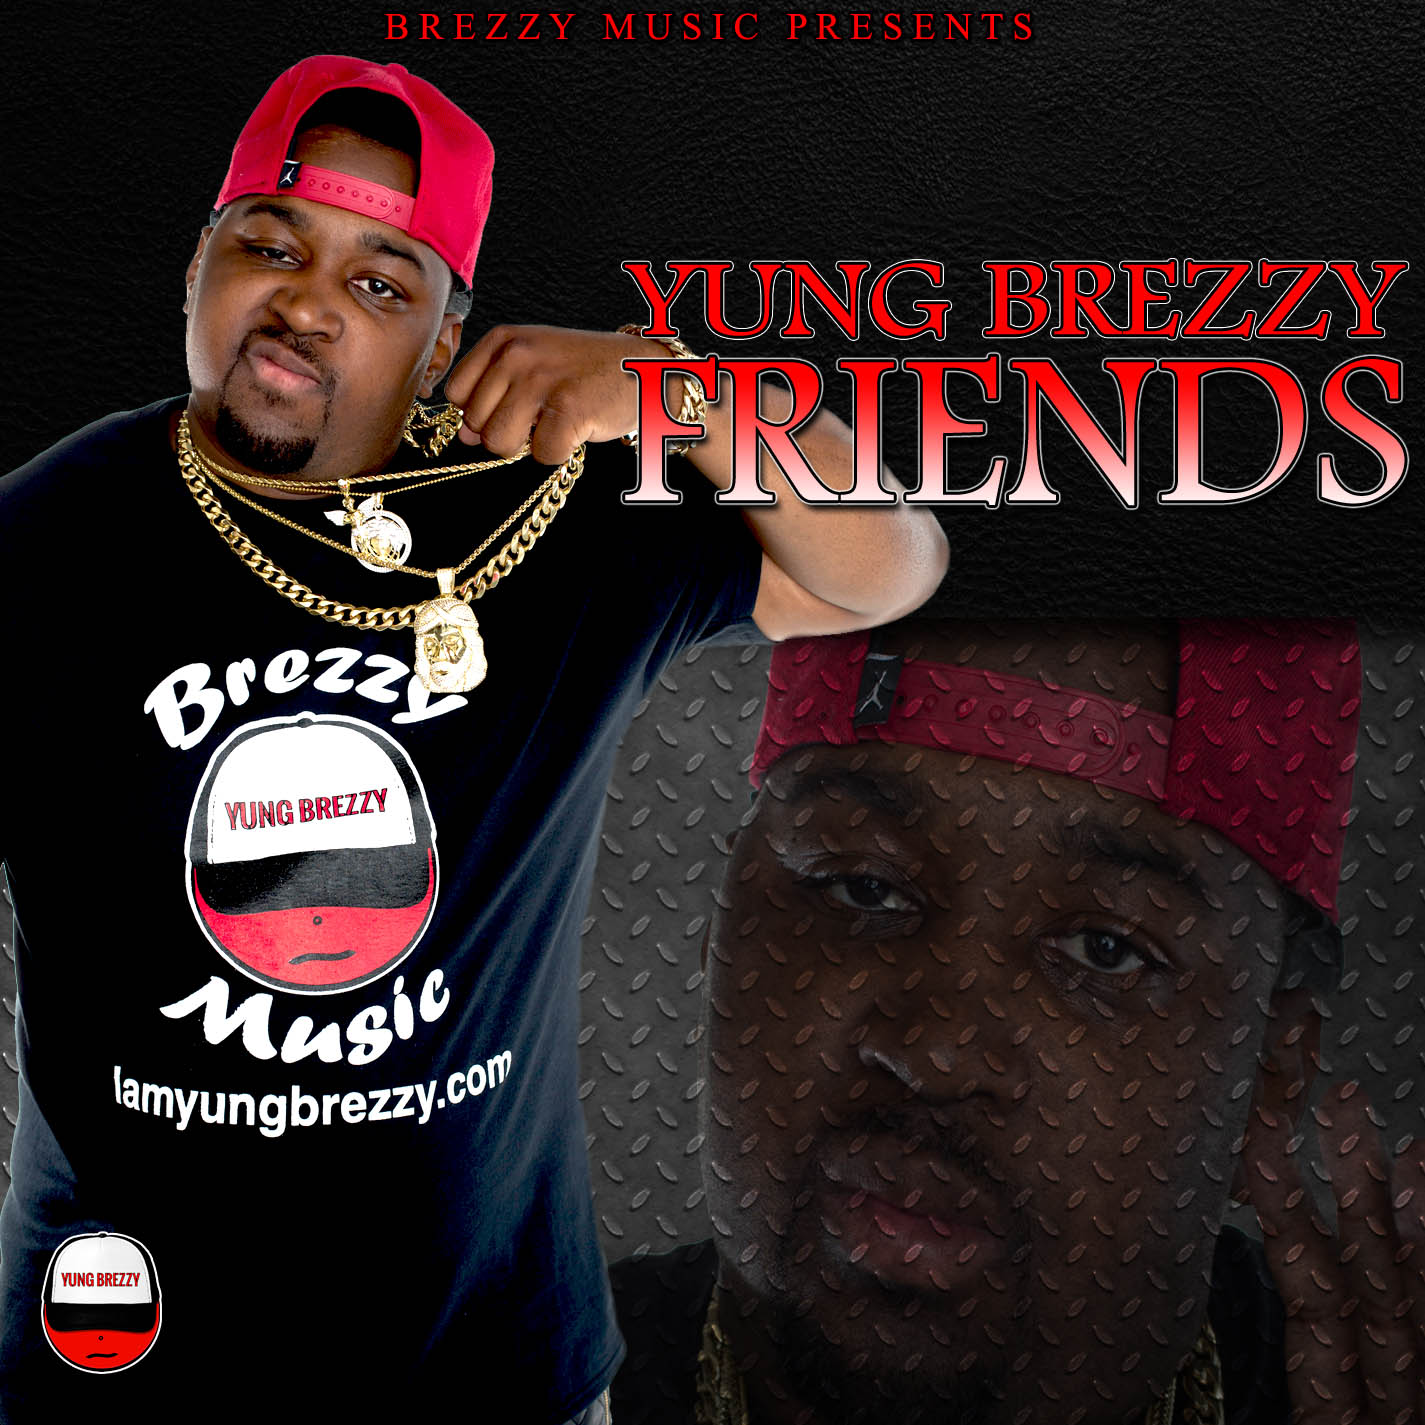 [New Music] Yung Brezzy – Friends Prod by Beat Champ @IAMYUNGBREZZY